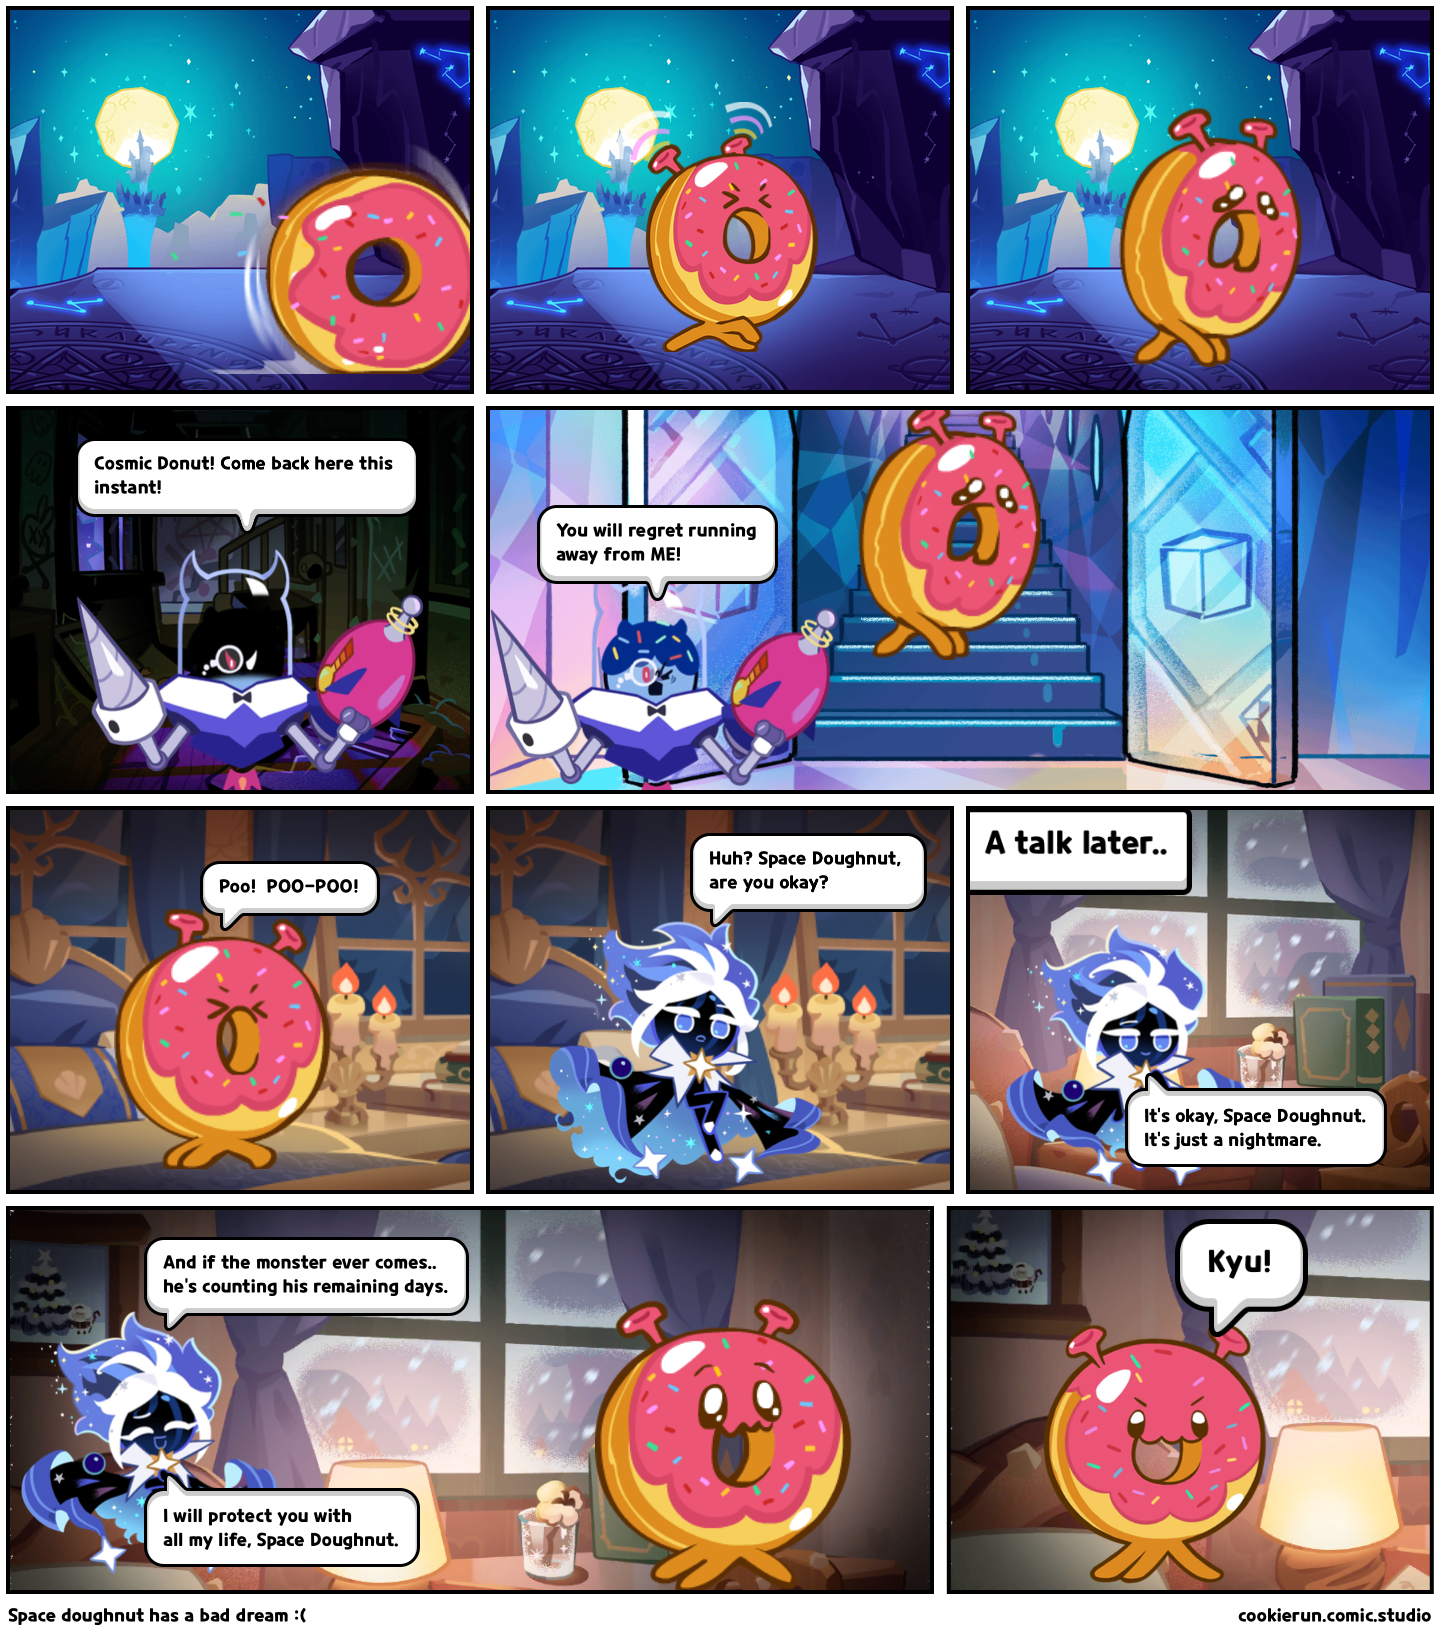 Space doughnut has a bad dream :(